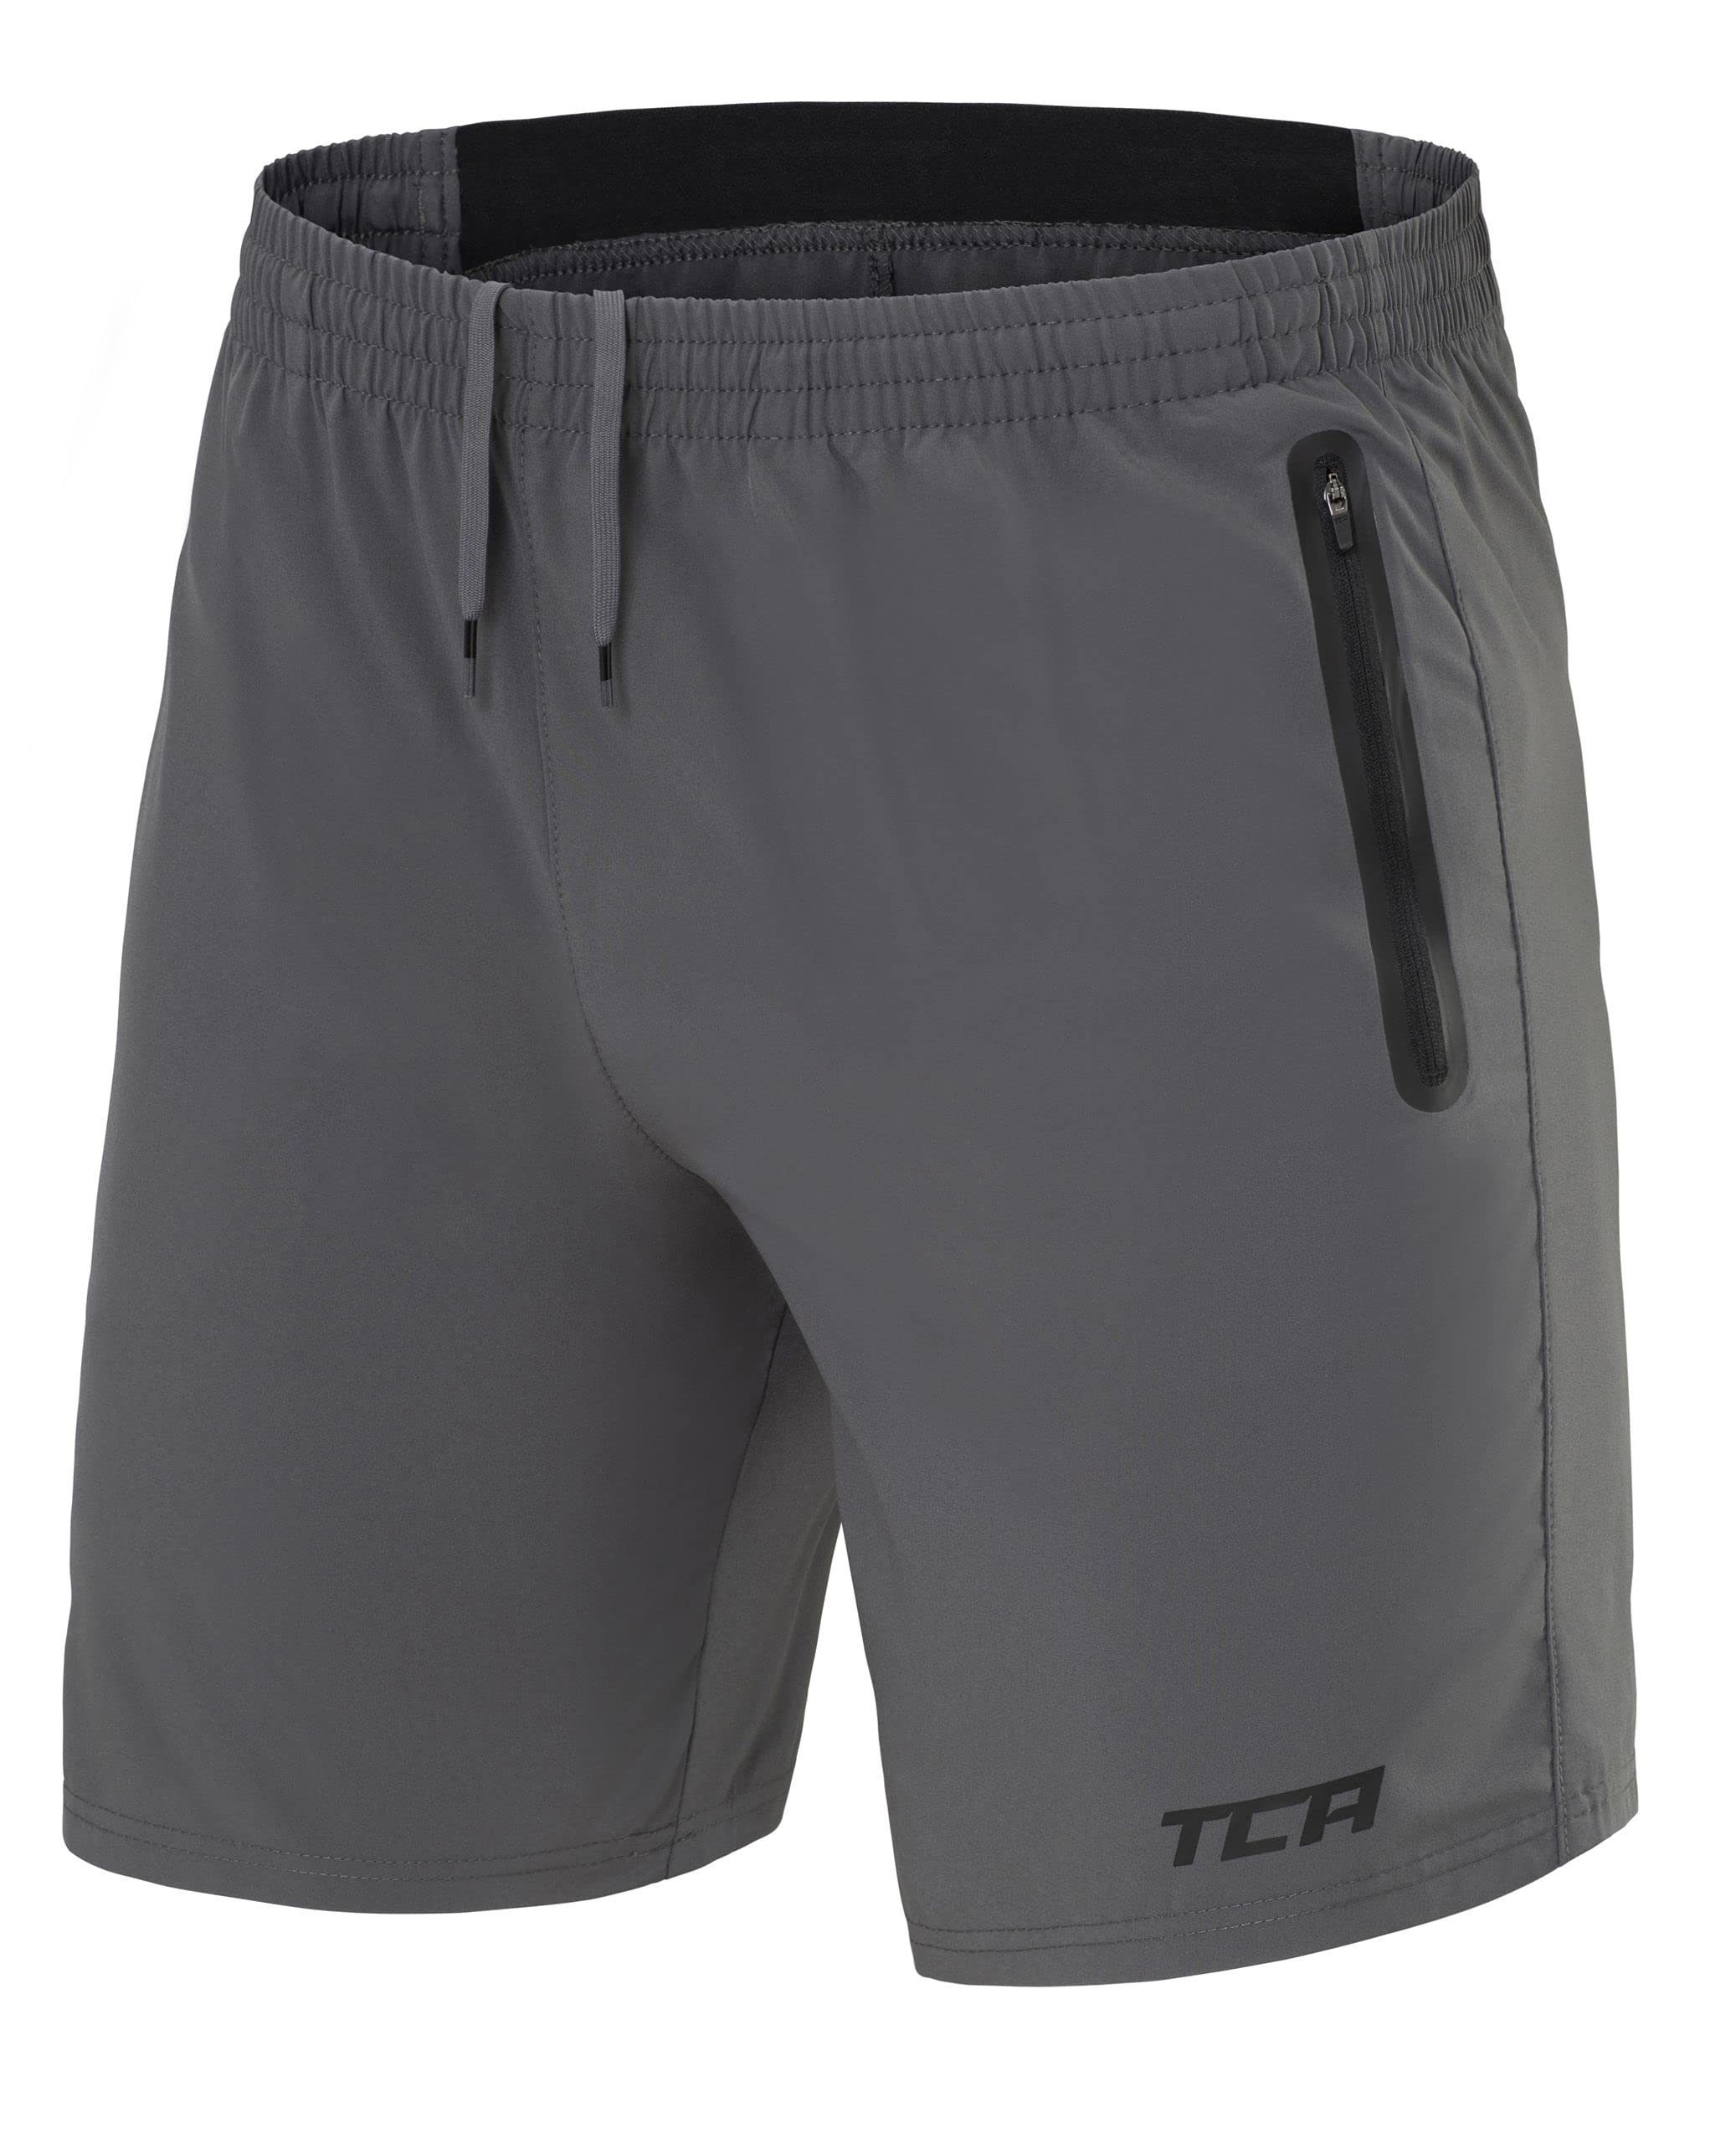 TCA Trainingsshorts TCA Herren Elite Tech Laufhose mit Reißverschlusstaschen - Grau, 3XL